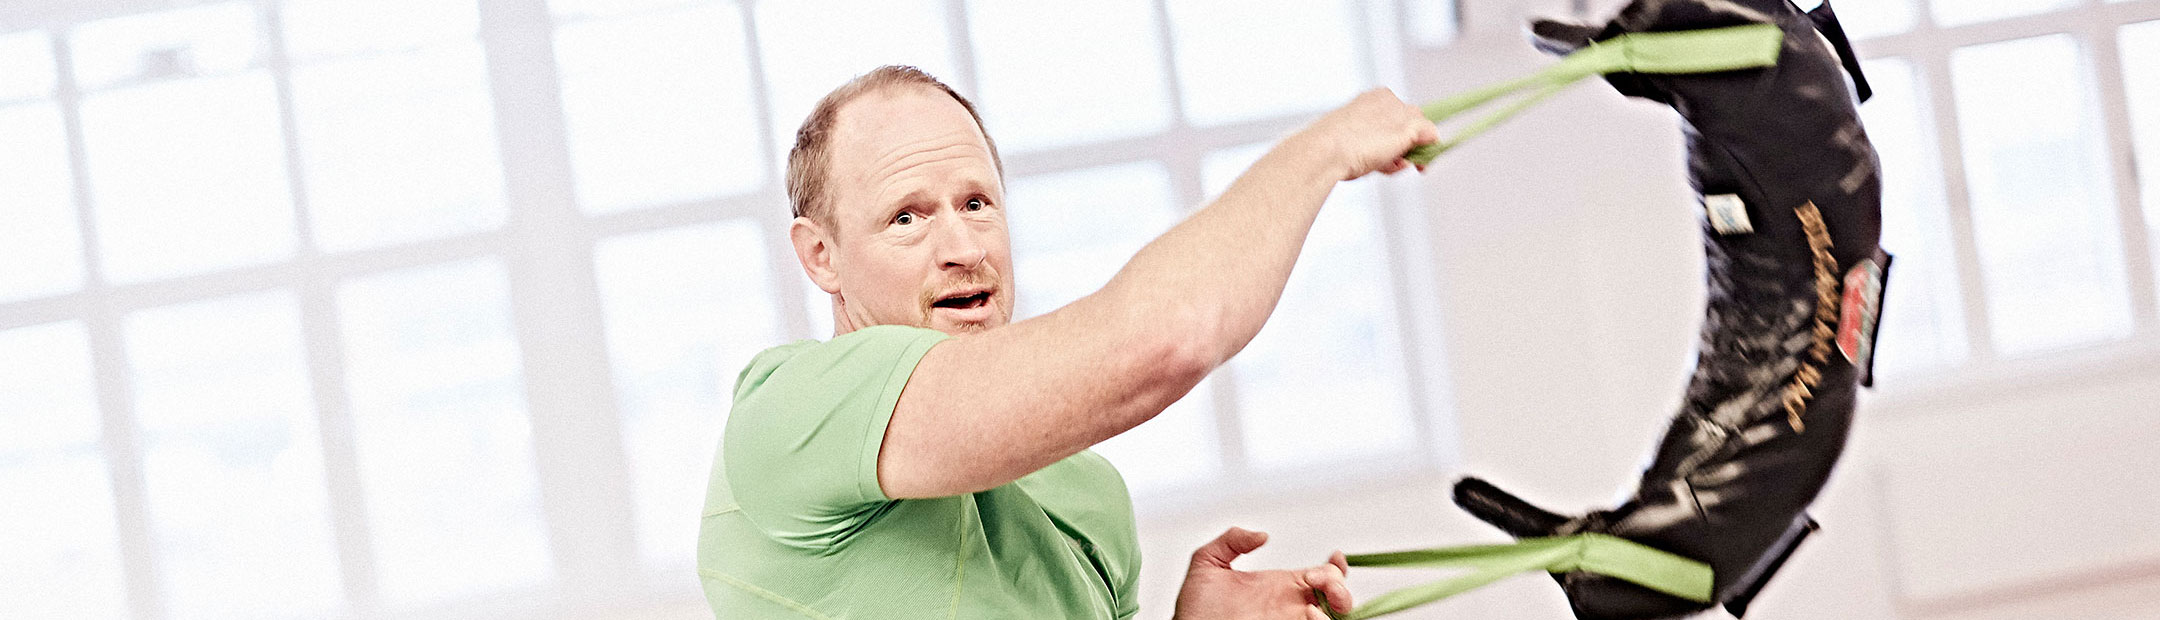 En man i grön t-shirt står i en träningssal och svingar en svart bulgarian bag åt sidan med båda händerna.